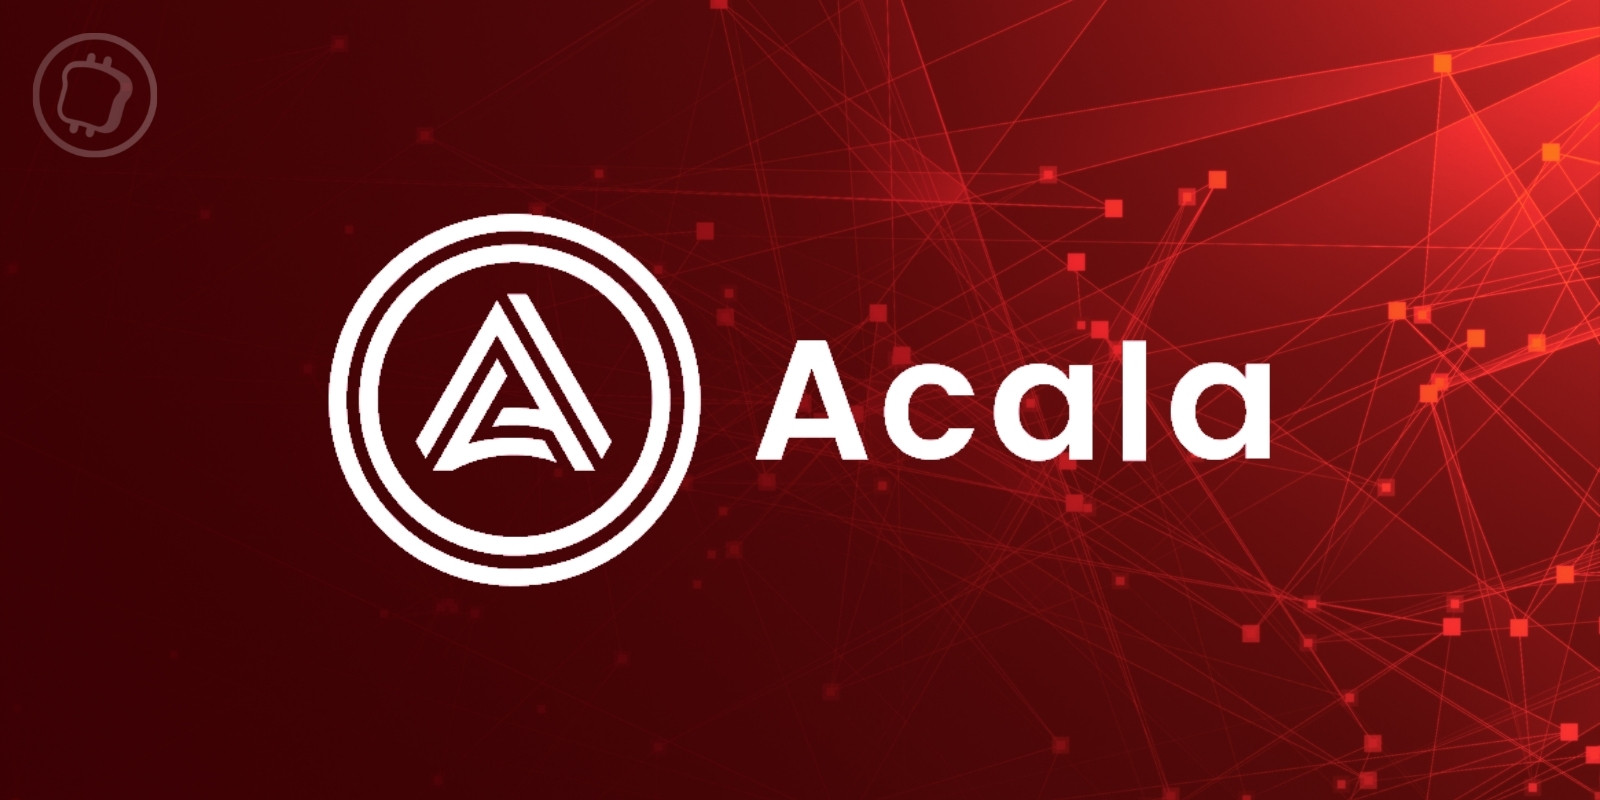 Le protocole Acala a été exploité – Les attaquants créent artificiellement 1,2 milliard de dollars